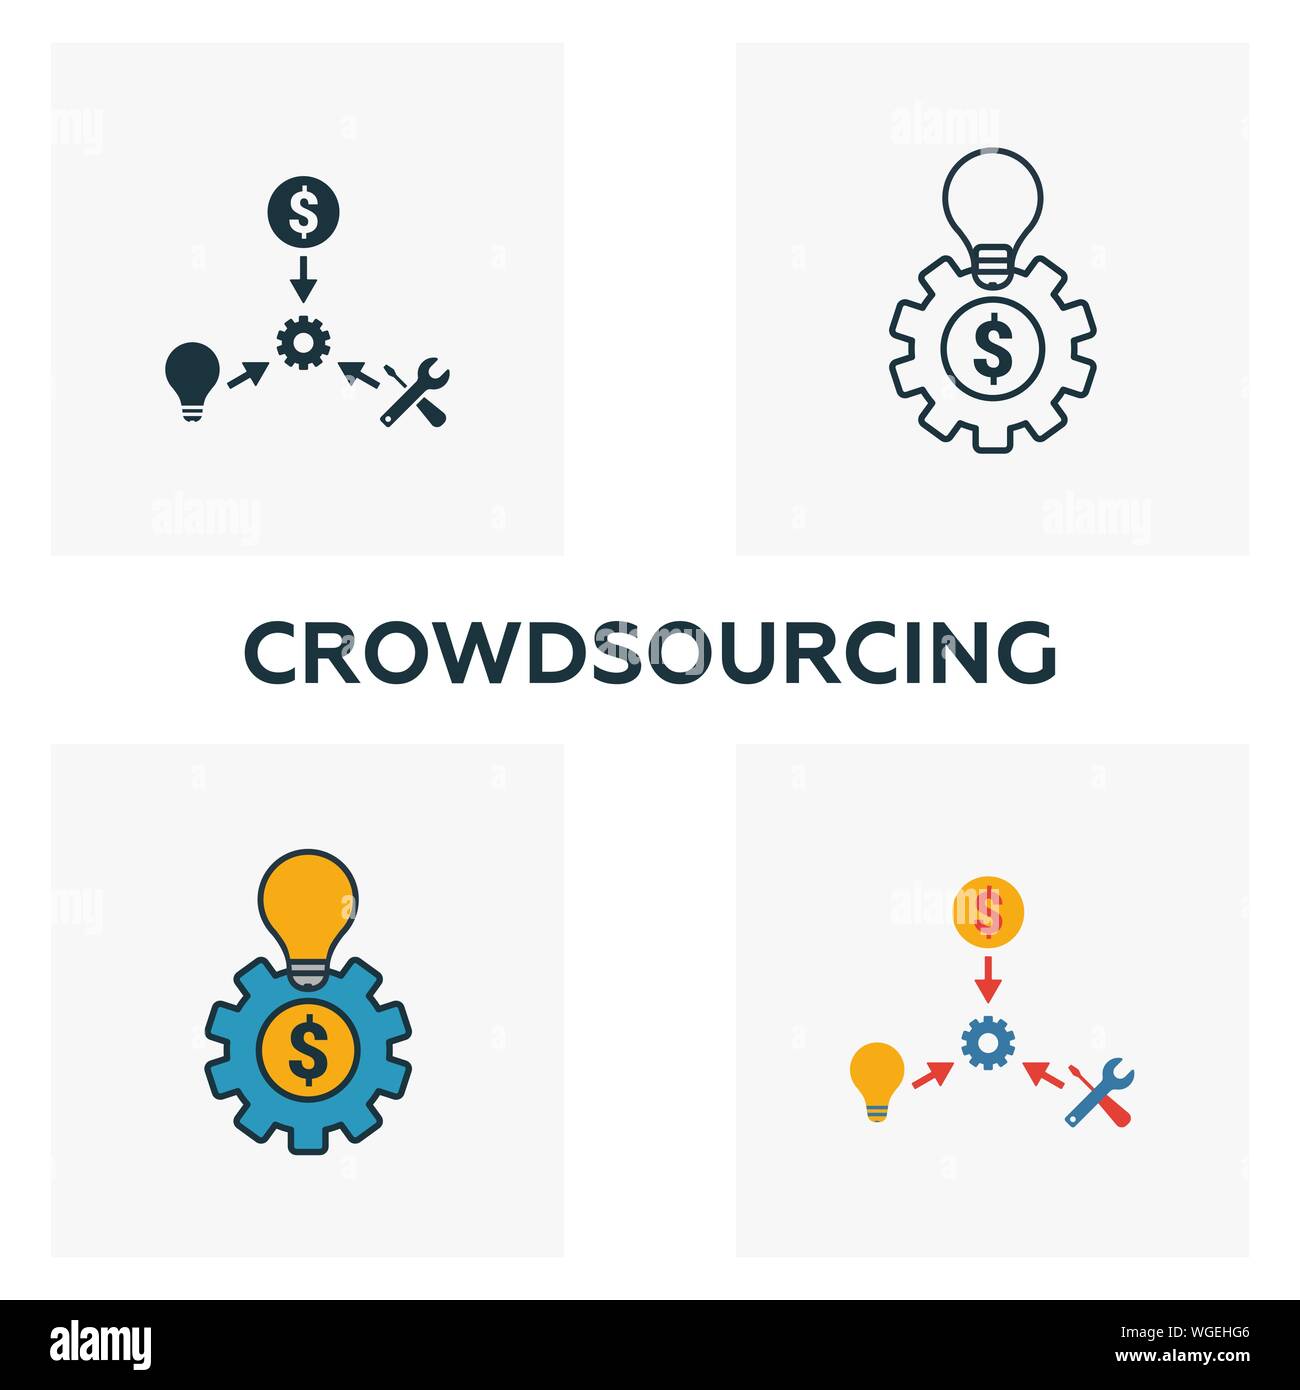 Crowdsourcing icon set. Quattro elementi in diversi stili dal contenuto raccolta di icone. Creative crowdsourcing icone riempito, contorno, colorata e piatto Illustrazione Vettoriale